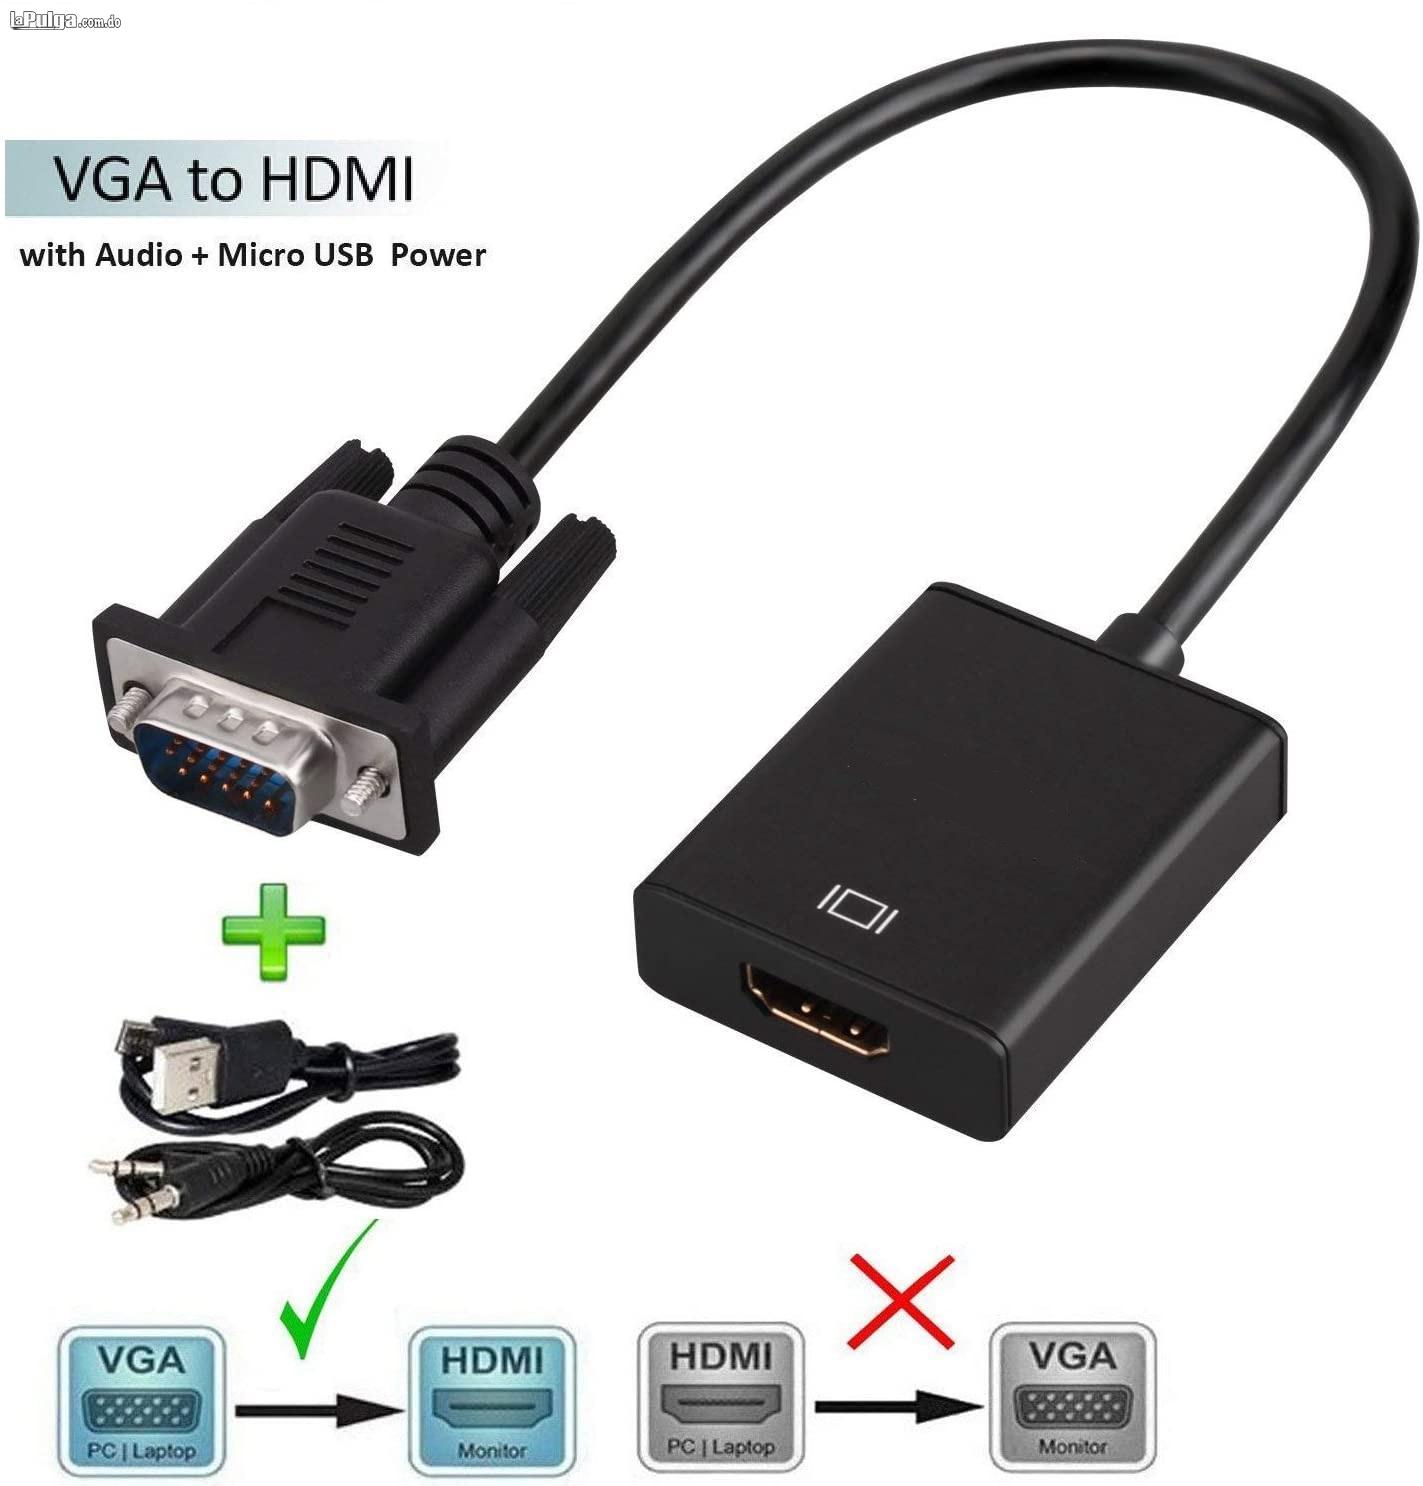 Adaptador de VGA a HDMI con audio Foto 7138444-1.jpg